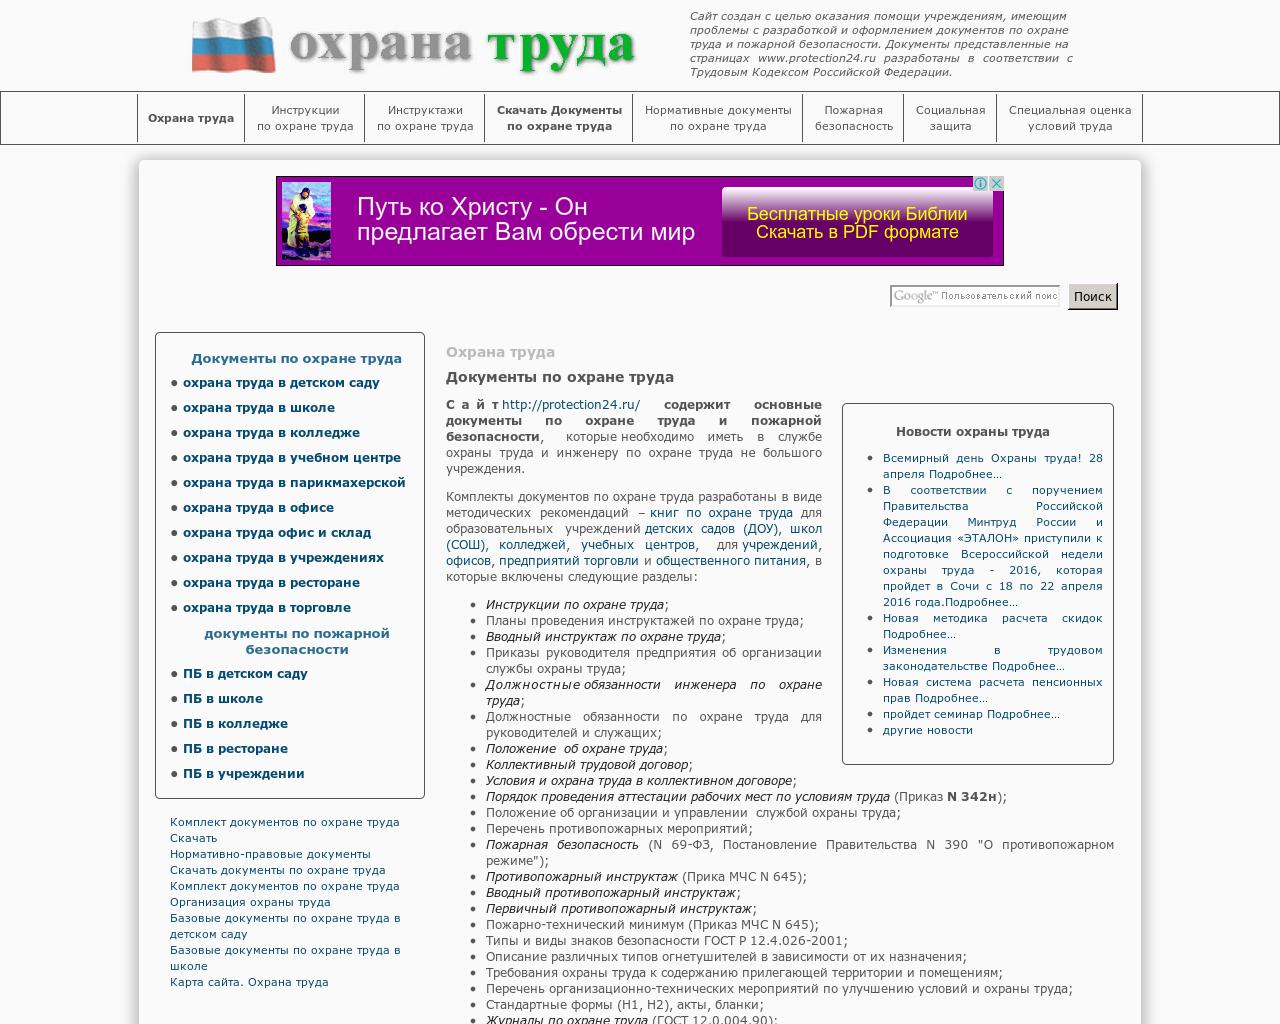 Изображение сайта protection24.ru в разрешении 1280x1024